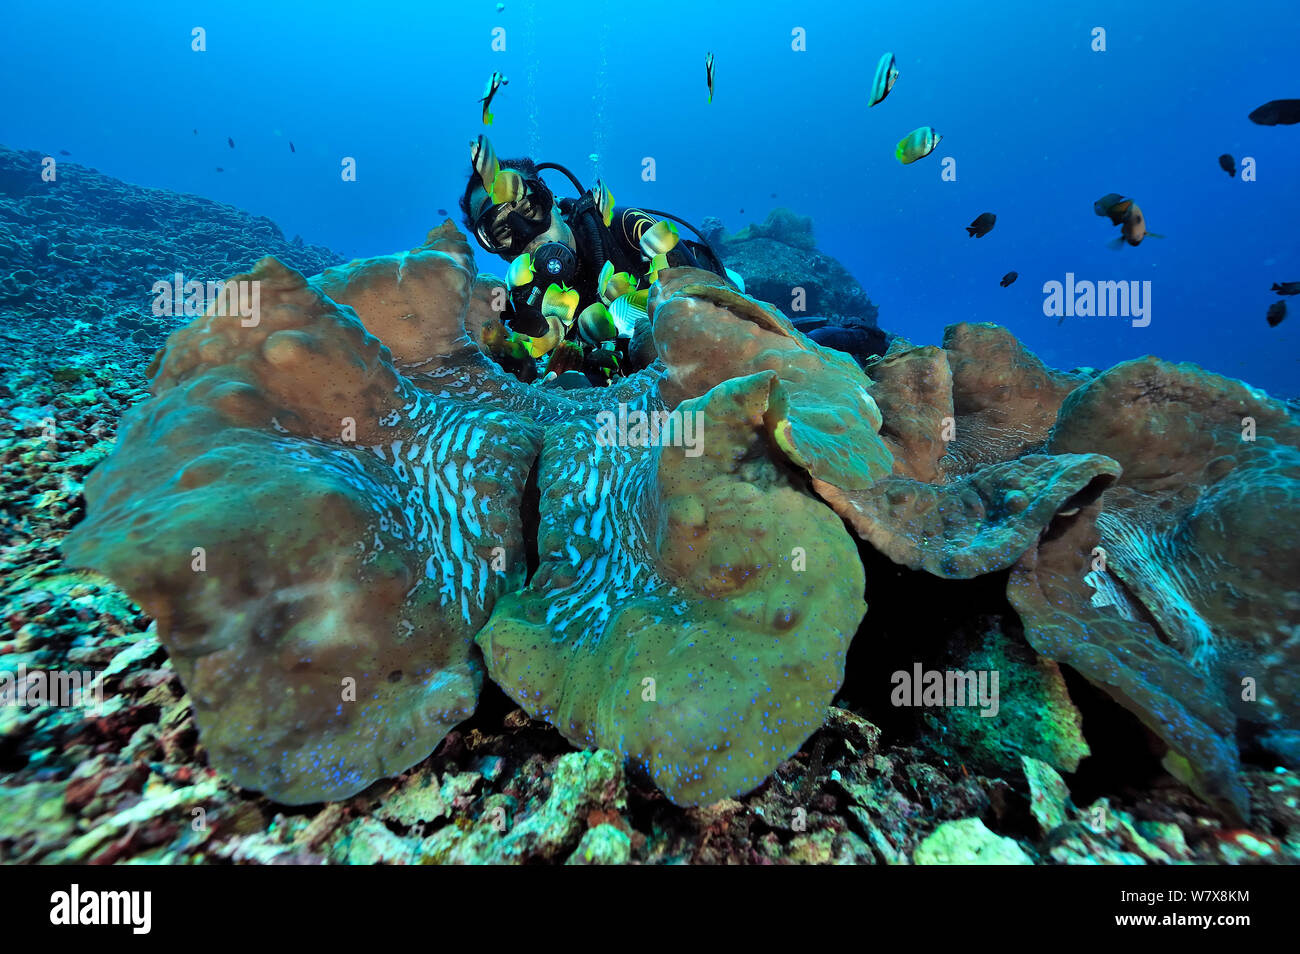 Diver hinter Riesenmuscheln (Tridacna gigas) Manado, Indonesien. Sulawesi Meer. Mai 2010. Stockfoto